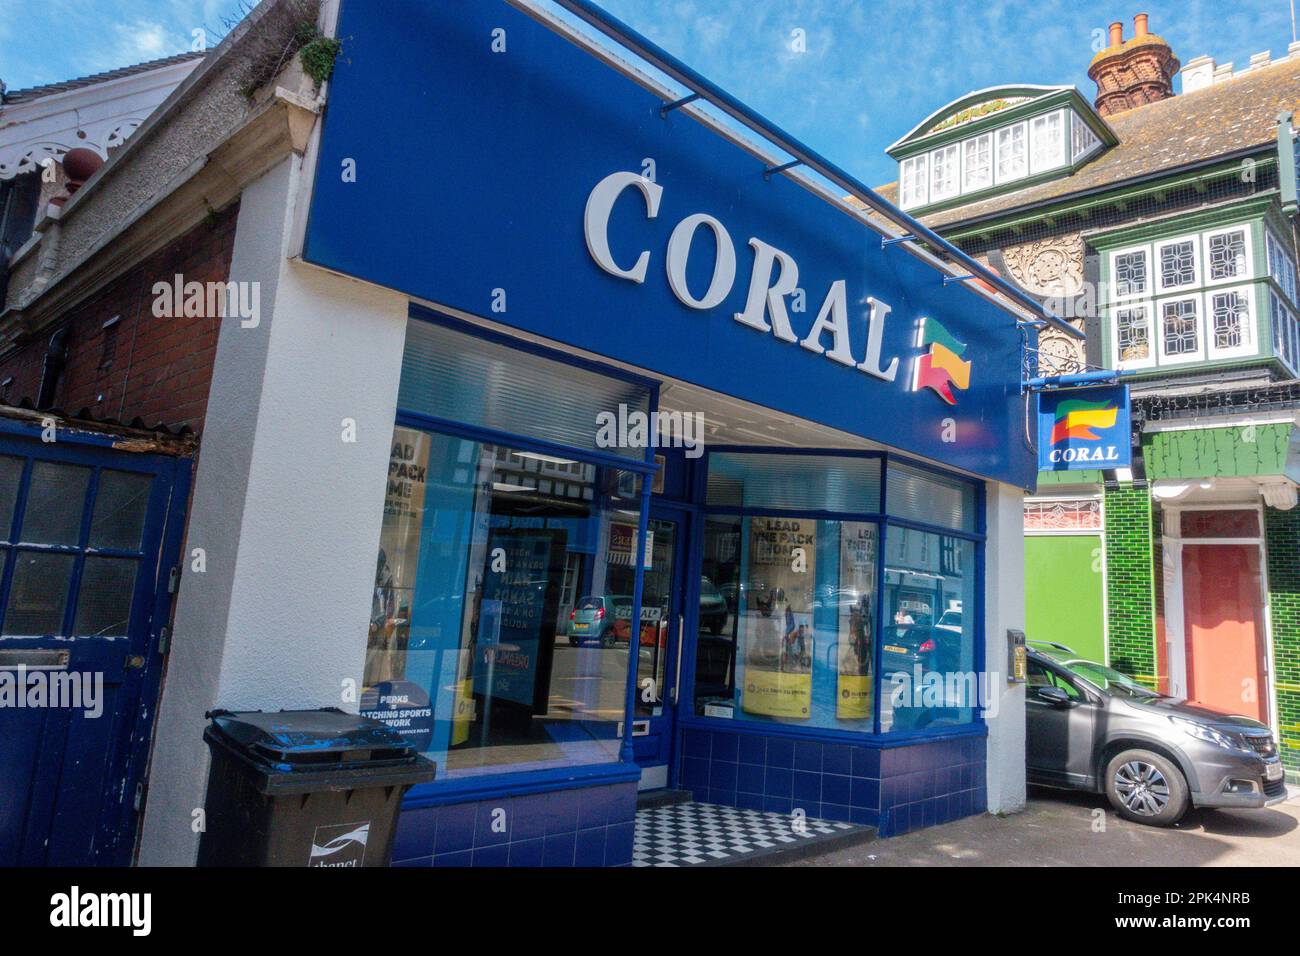 Coral, librairie, magasin de Paris, St Mildards Road, Westgate on Sea, Kent Banque D'Images